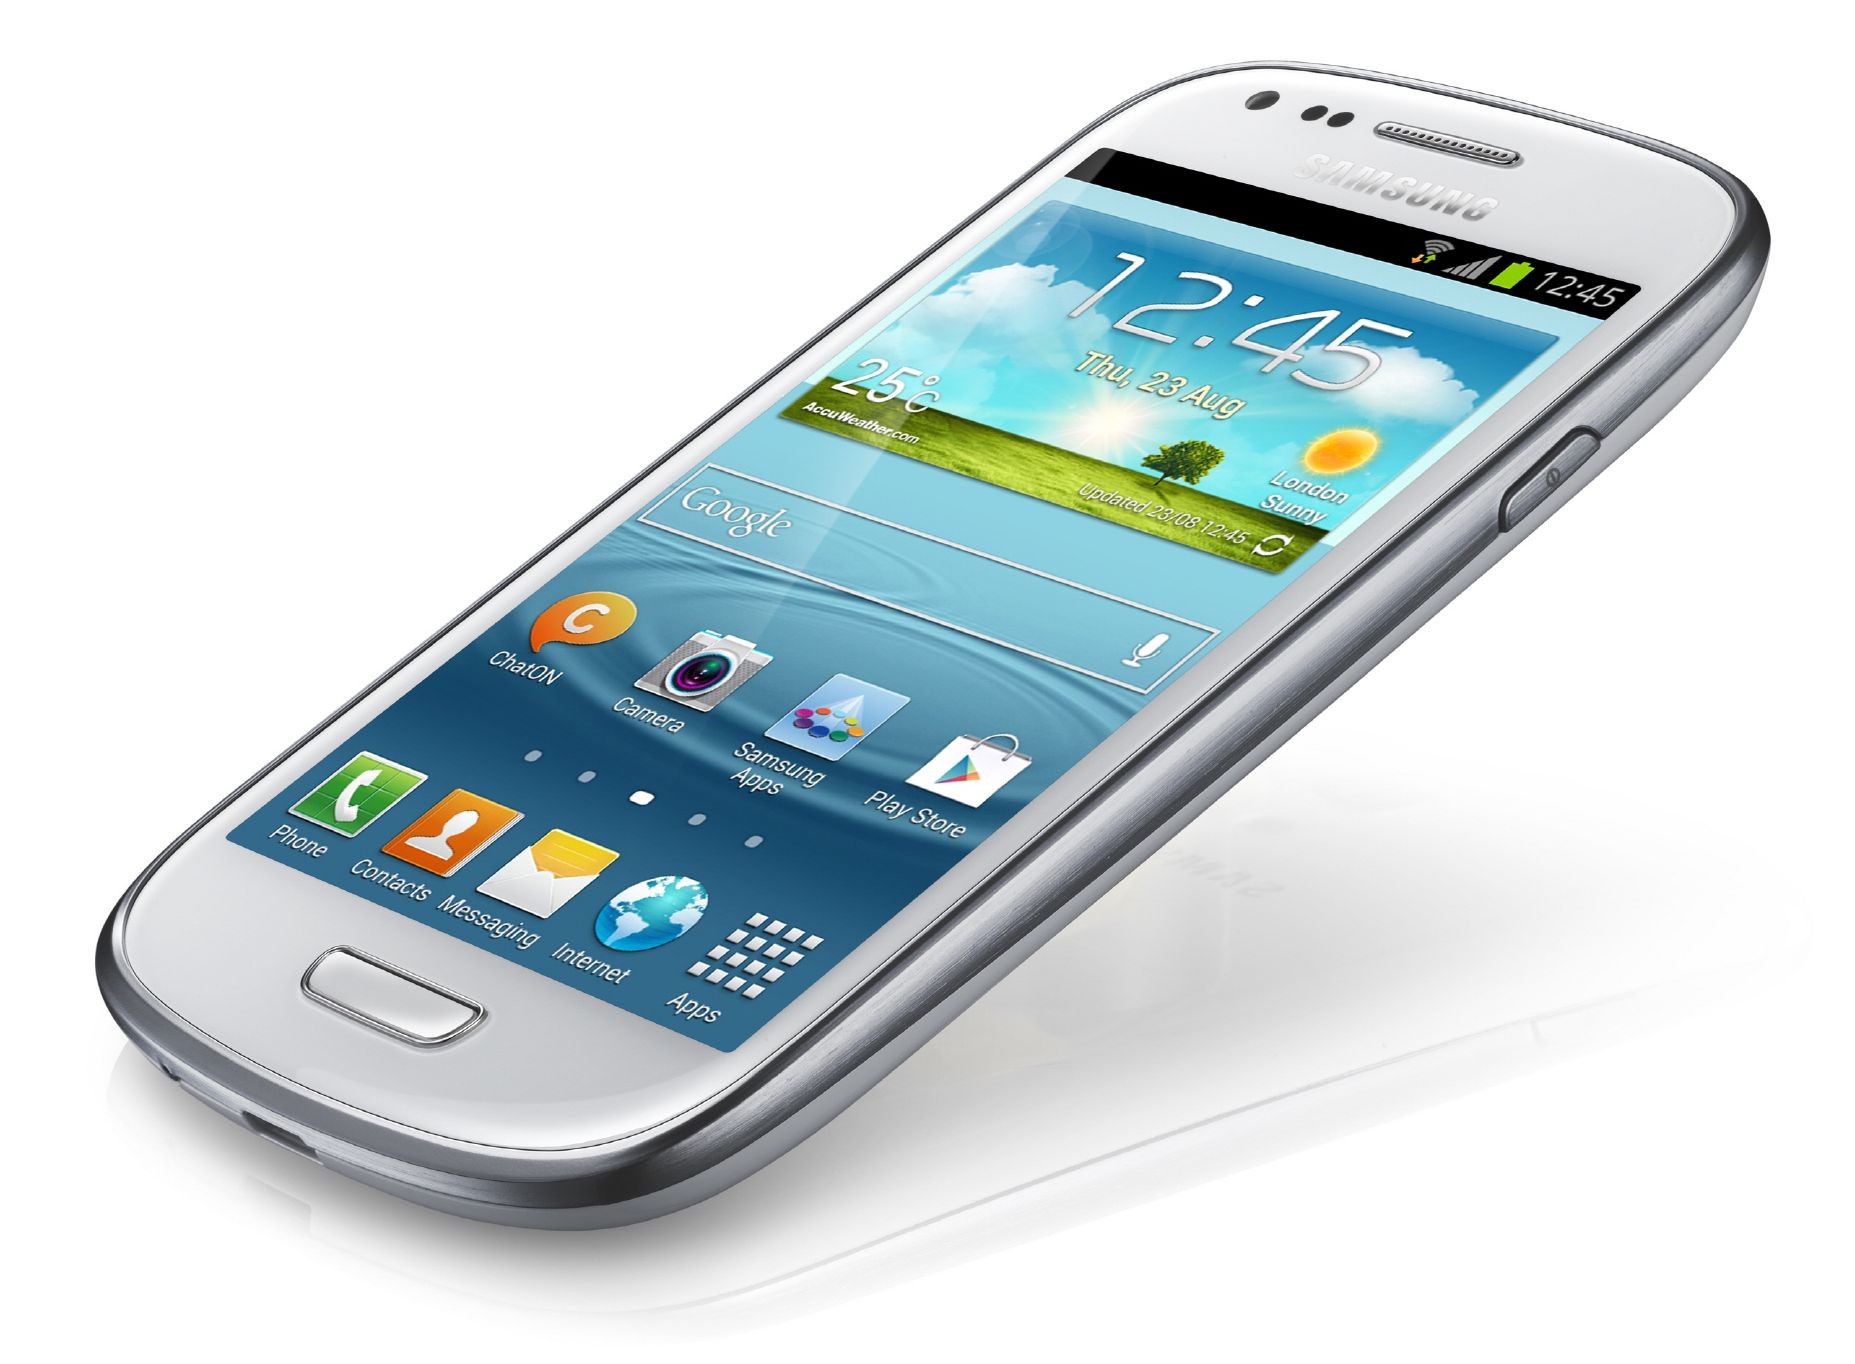 Samsung Galaxy S3 Mini obtiene precio y fecha de lanzamiento en el Reino Unido.  Disponible en pre-pedido ya